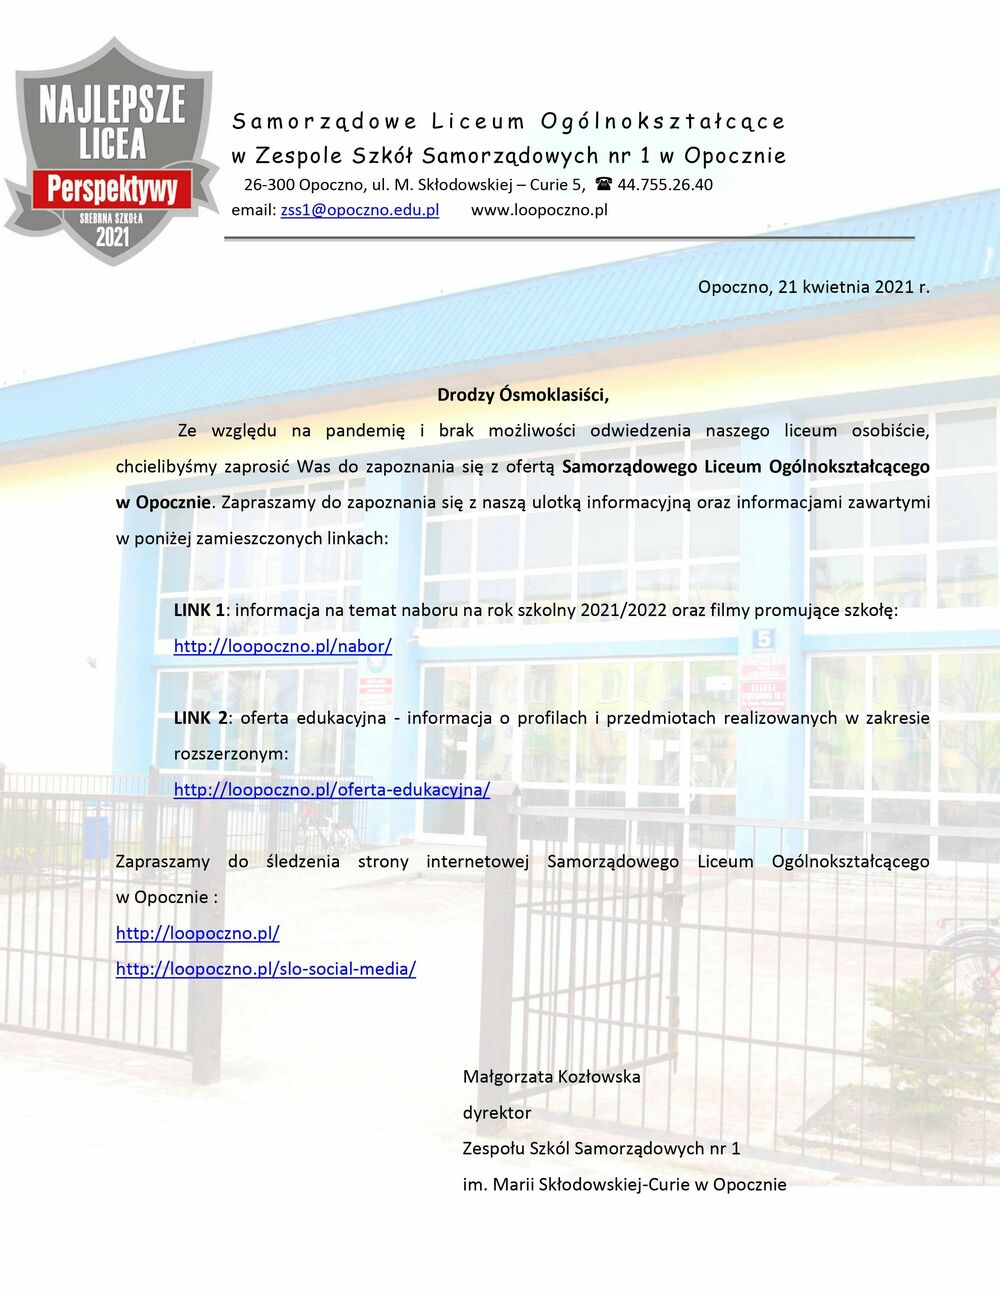 Oferta edukacyjna Samorządowego Liceum Ogólnokształcącego w Opocznie na rok szkolny 2021/2022